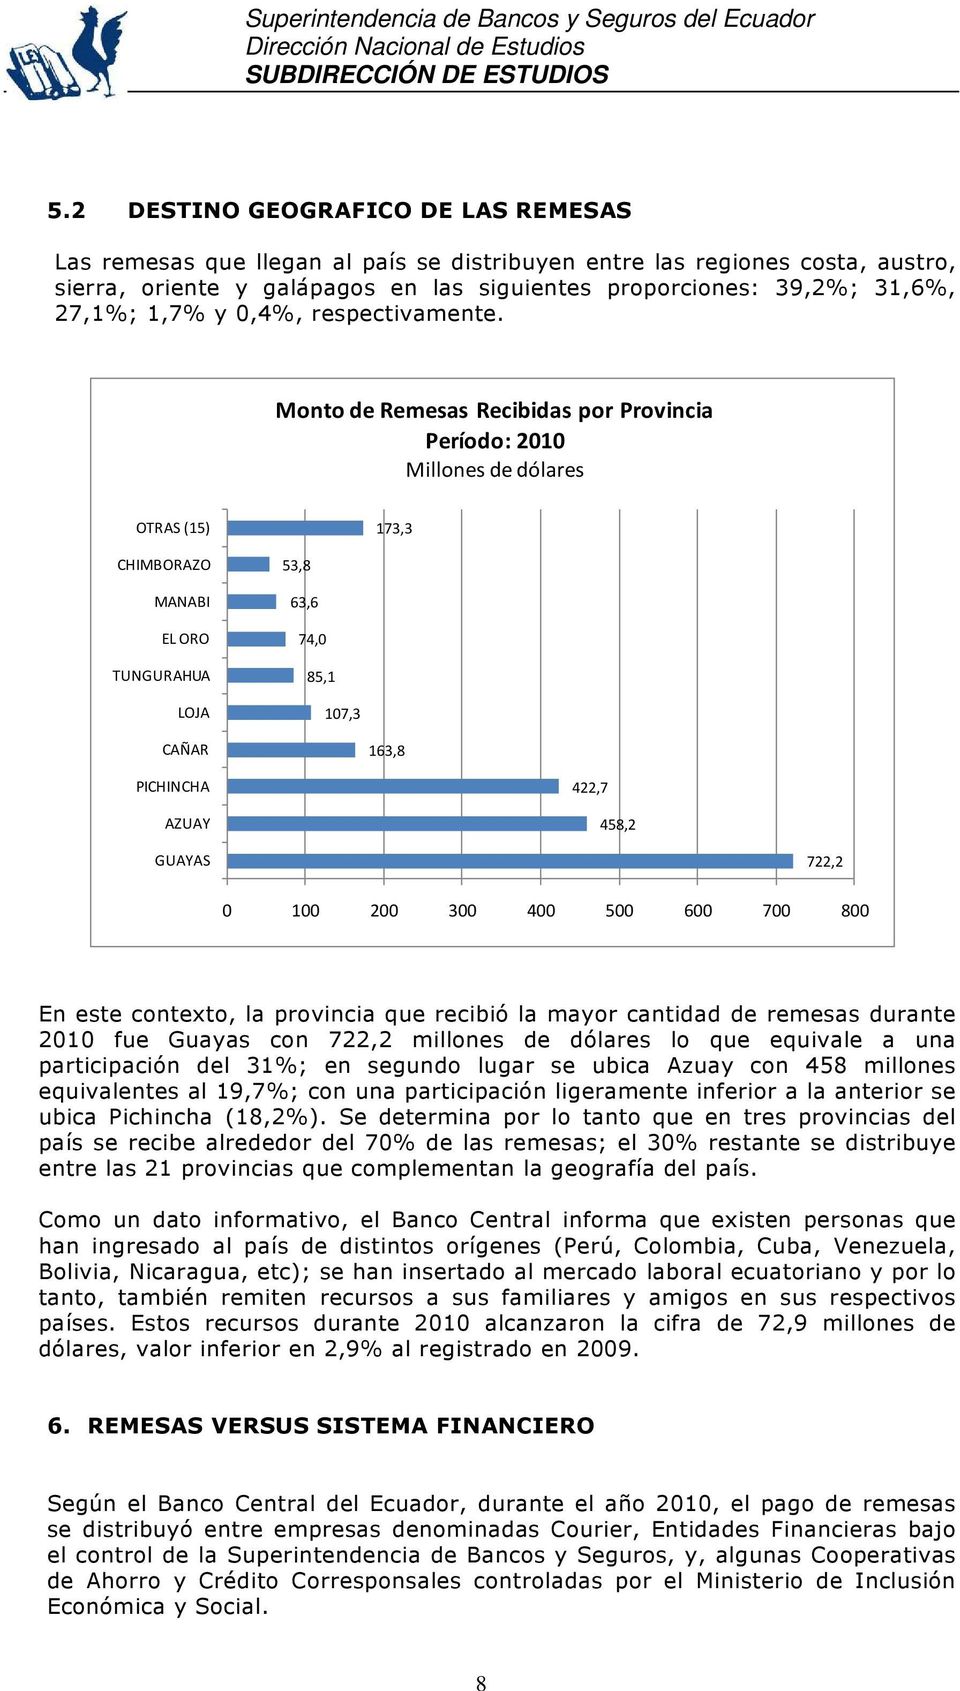 Monto de Remesas Recibidas por Provincia Período: 2010 Millones de dólares OTRAS (15) 173,3 CHIMBORAZO MANABI EL ORO TUNGURAHUA LOJA 53,8 63,6 74,0 85,1 107,3 CAÑAR 163,8 PICHINCHA AZUAY 422,7 458,2